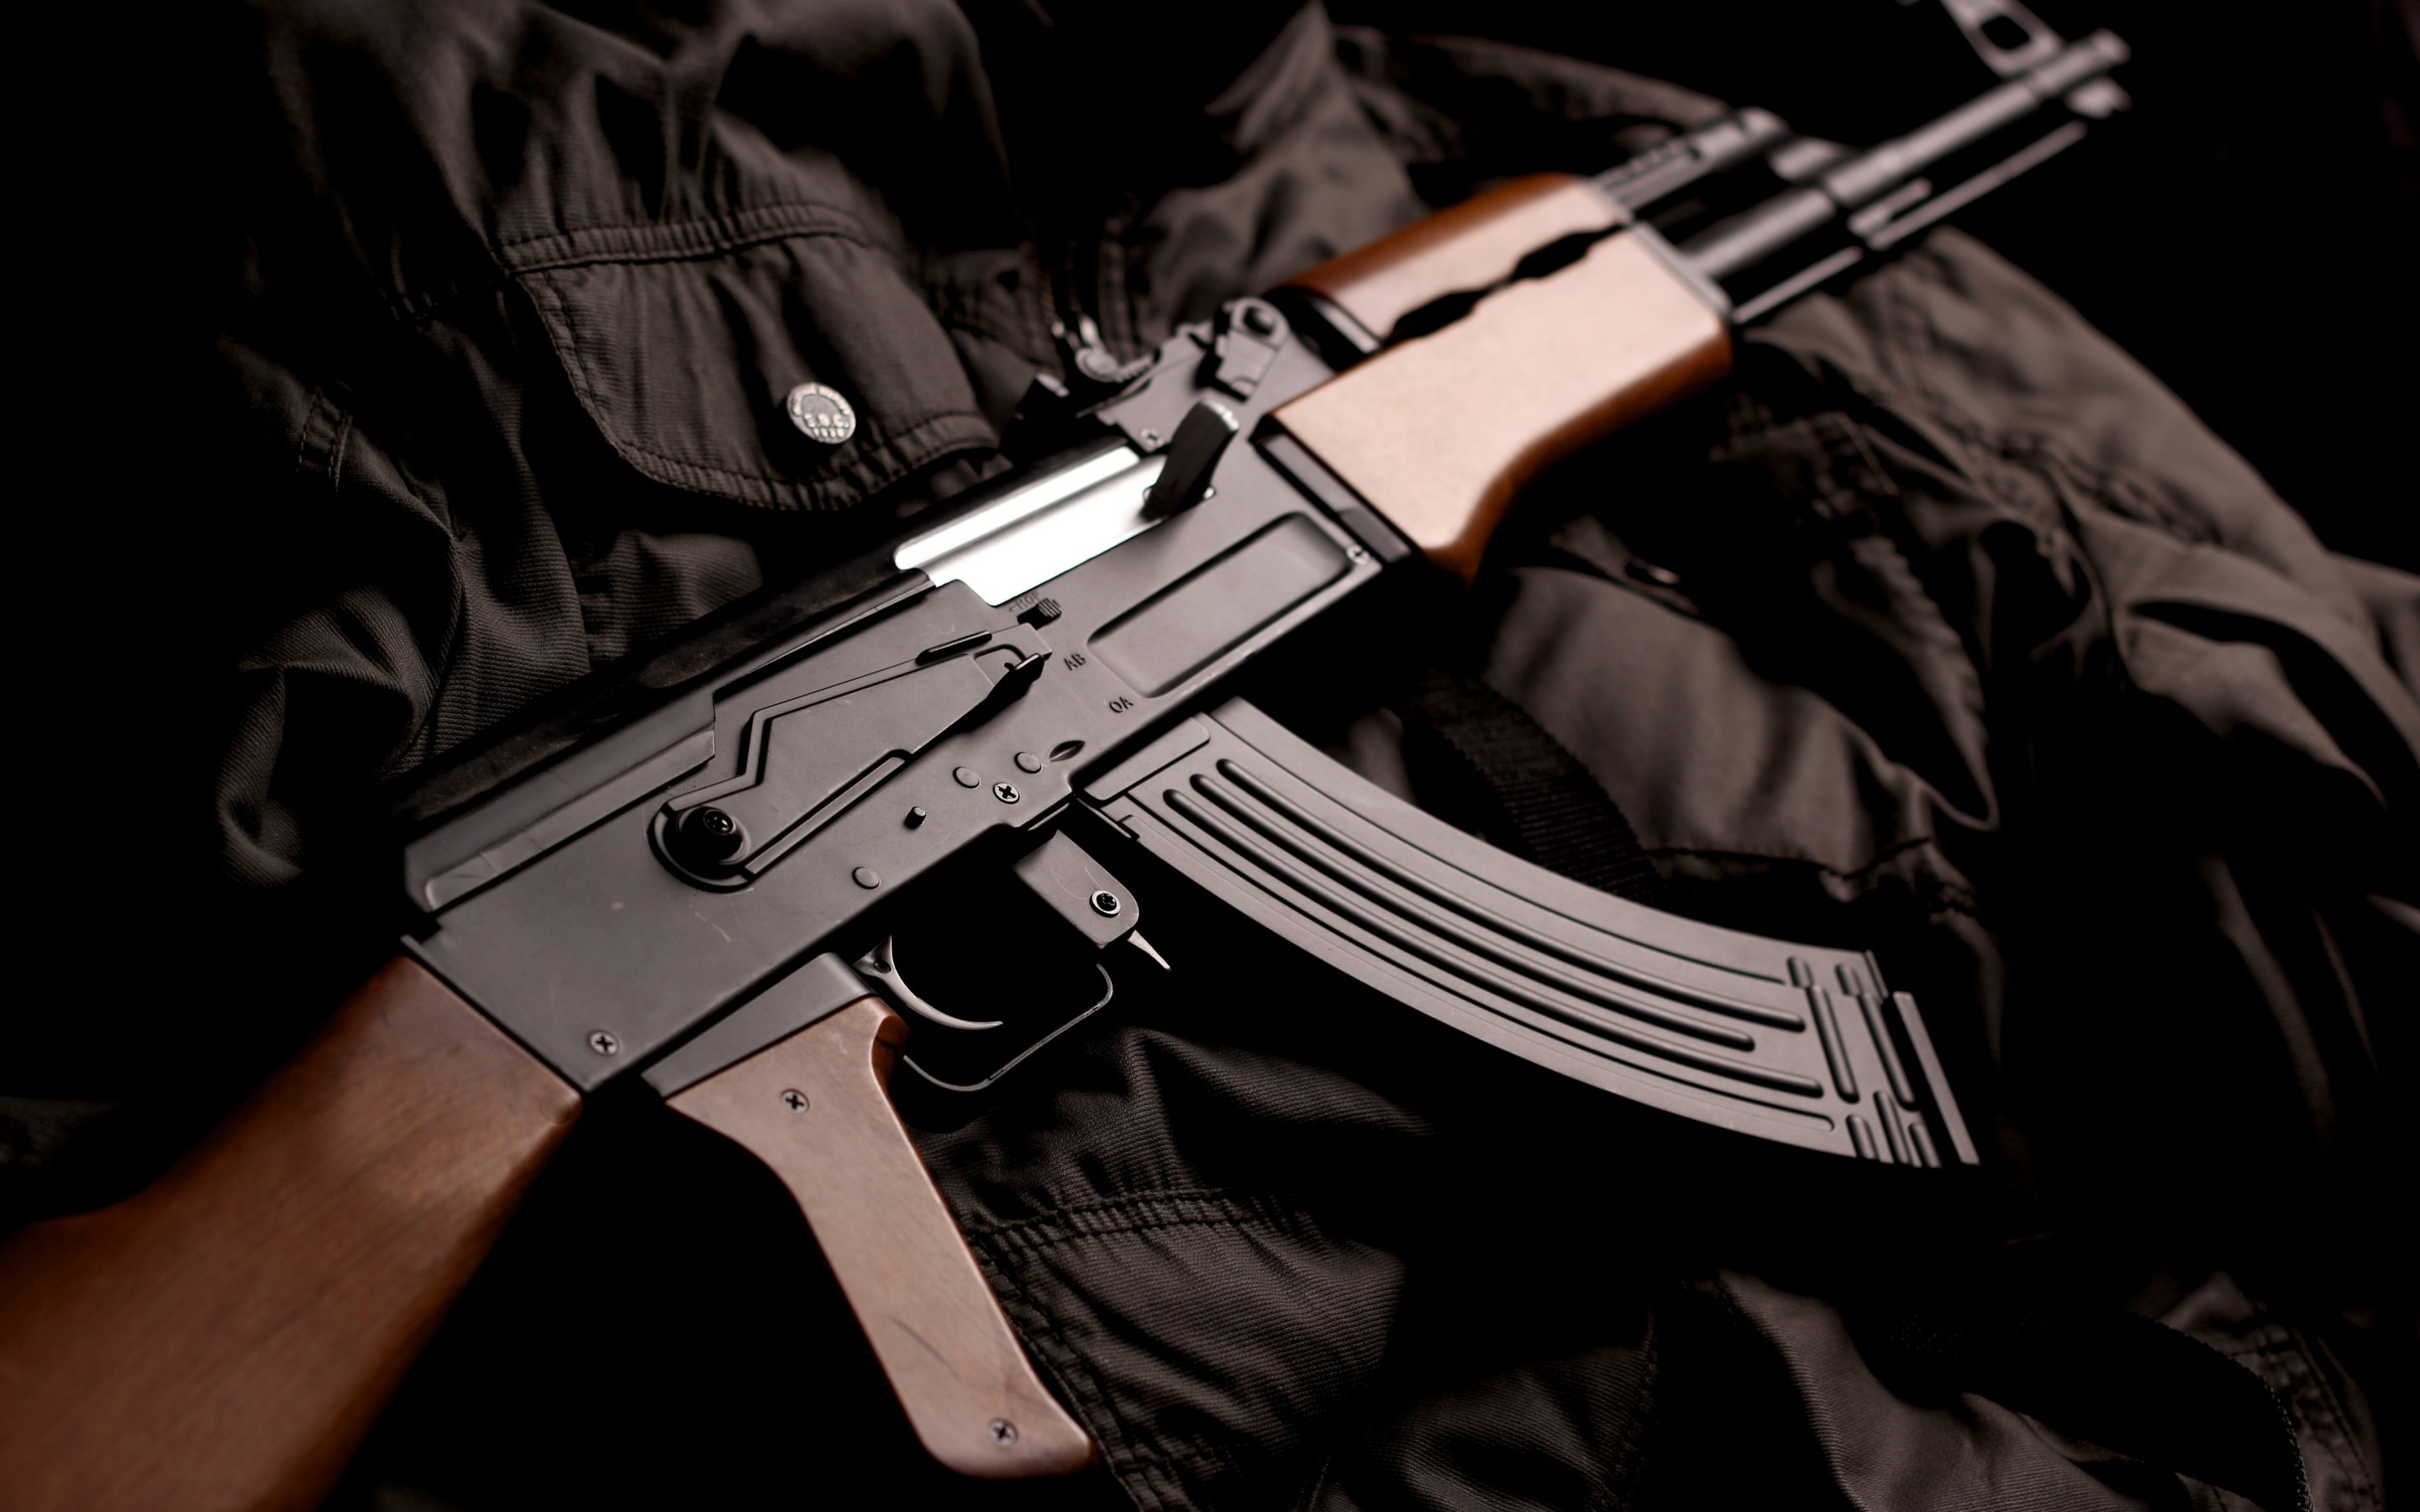 Handgun 1946, Wolfenstein Wiki